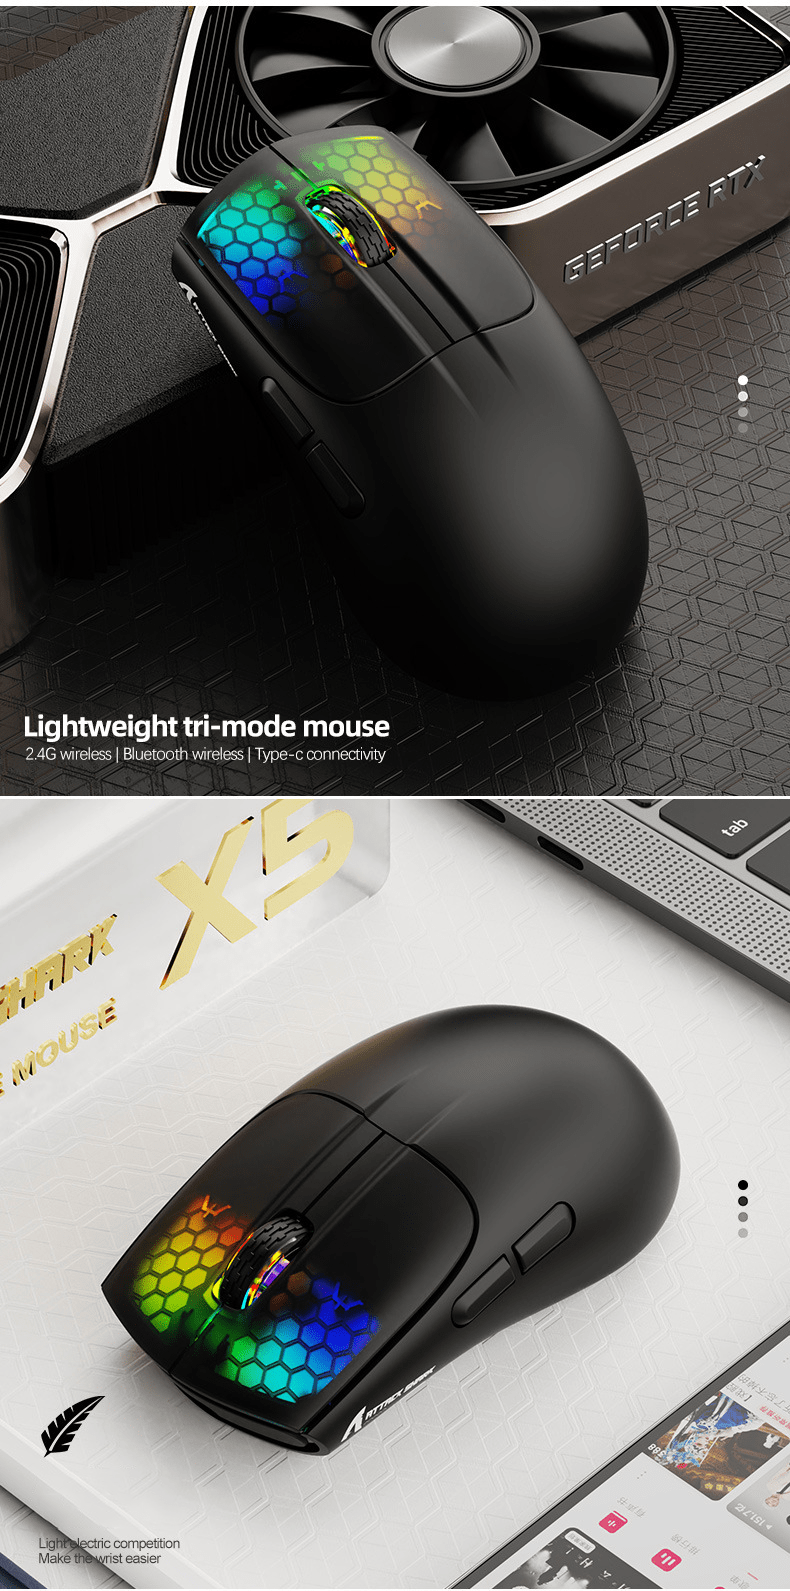 Chuột không dây ATTACK SHARK X5 kết nối 3 chế độ thiết kế chuột trọng lượng  siêu nhẹ kèm theo đèn led RGB và 5 mức độ DPI